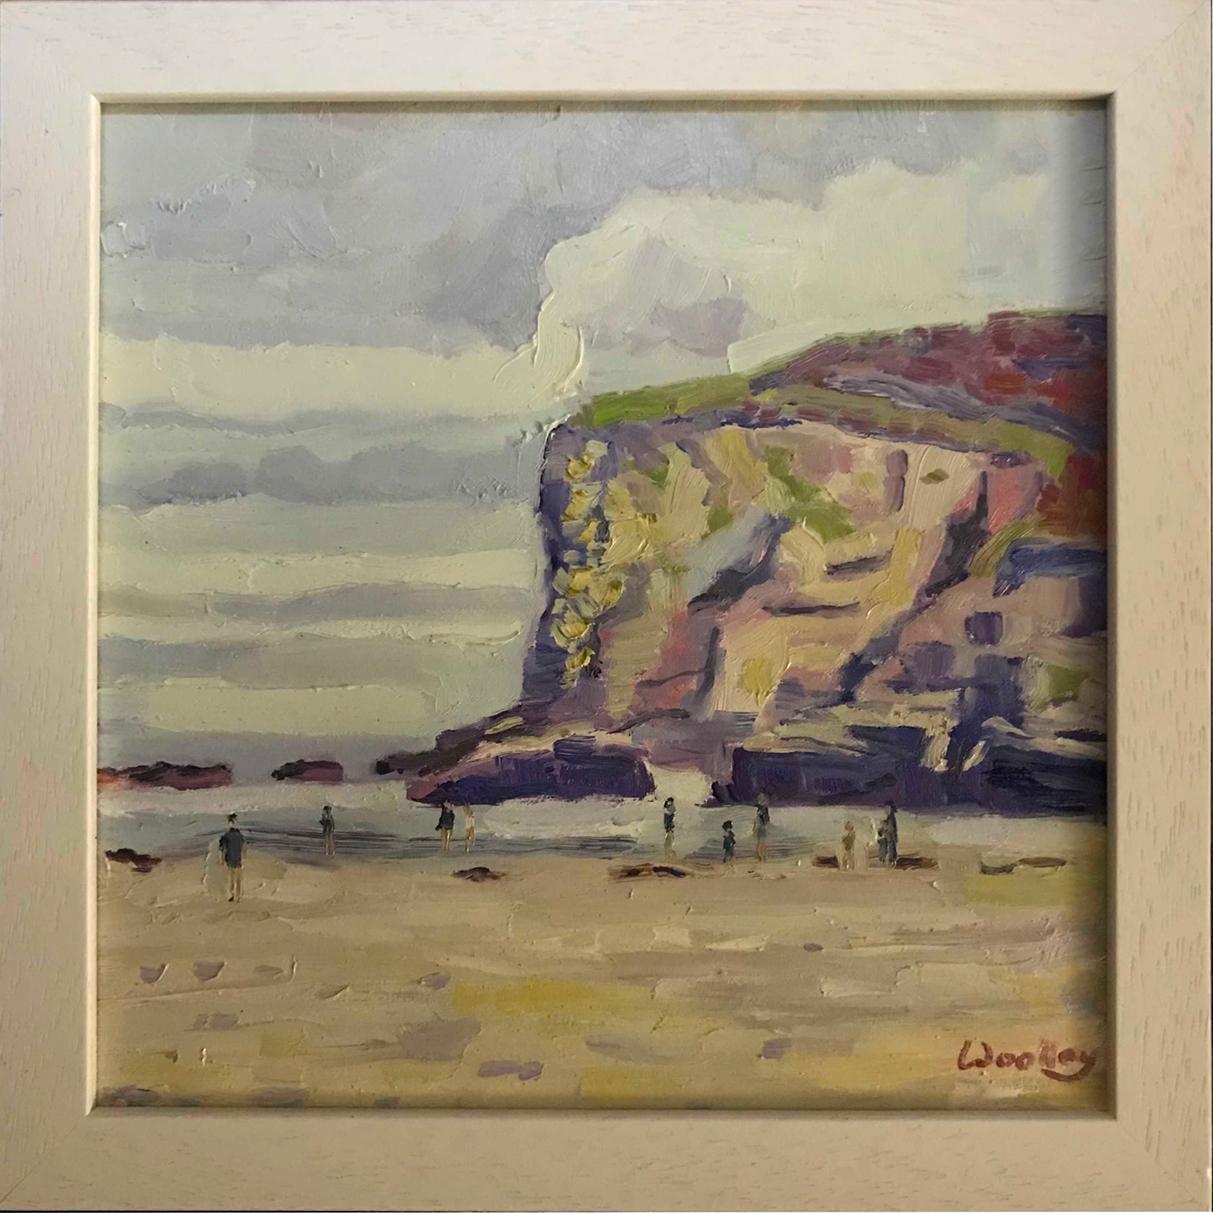 Abstract Painting Eleanor Woolley - Aquarelles d'hiver de Porthtowan, plage, coûteuse, nage, Cornouailles, personnes, nature